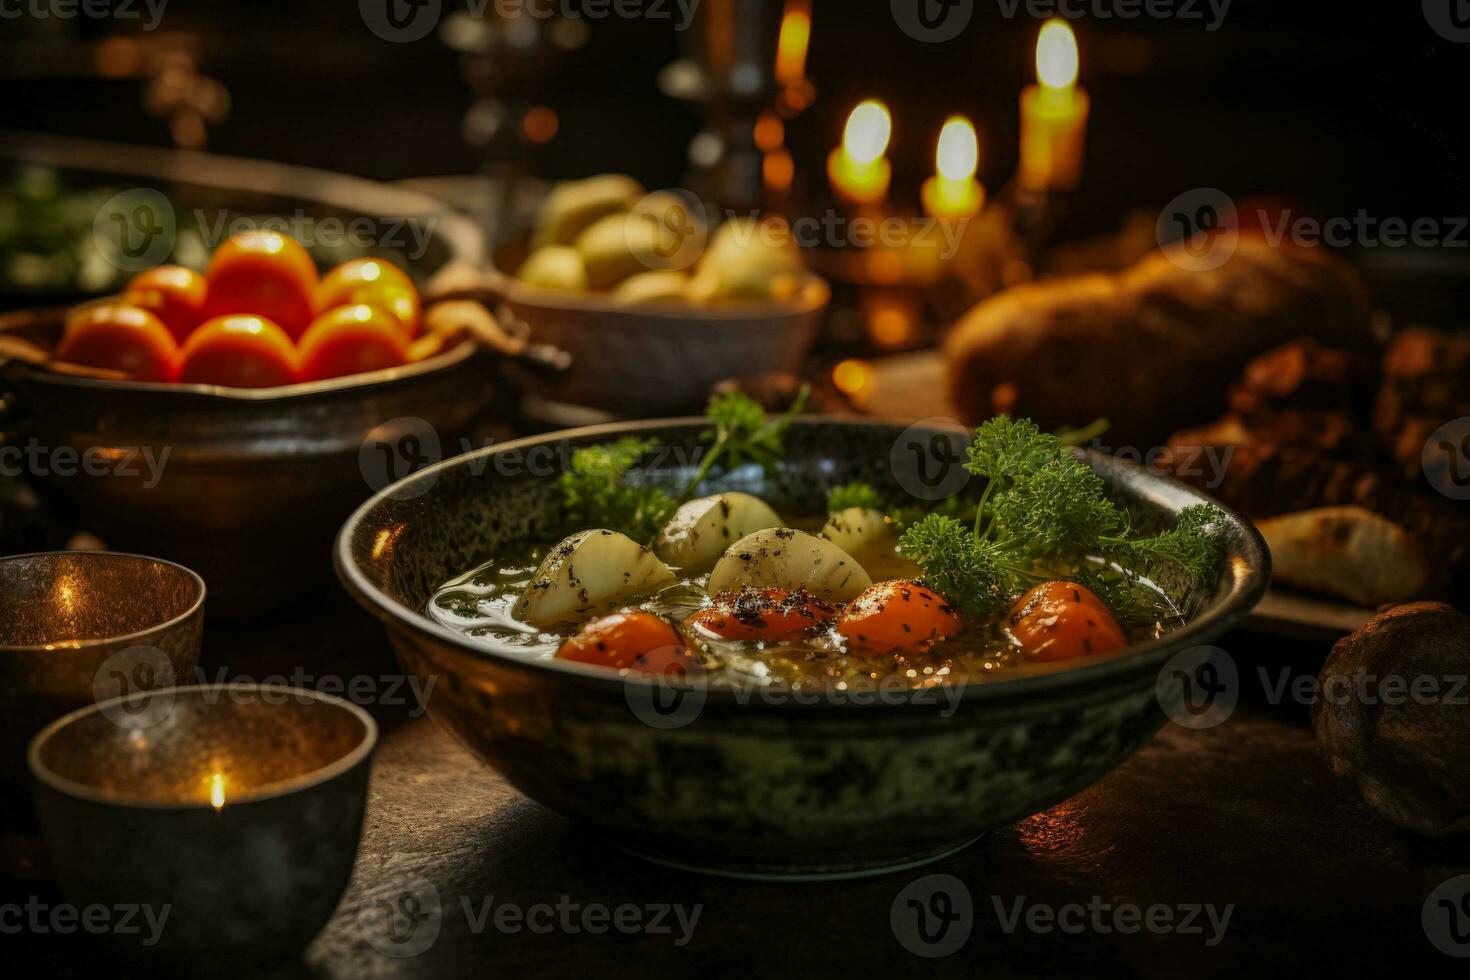 hjärtlig soppa i rustik skål mitt i flimmer ljus förkroppsligande hygge bekvämlighet foto